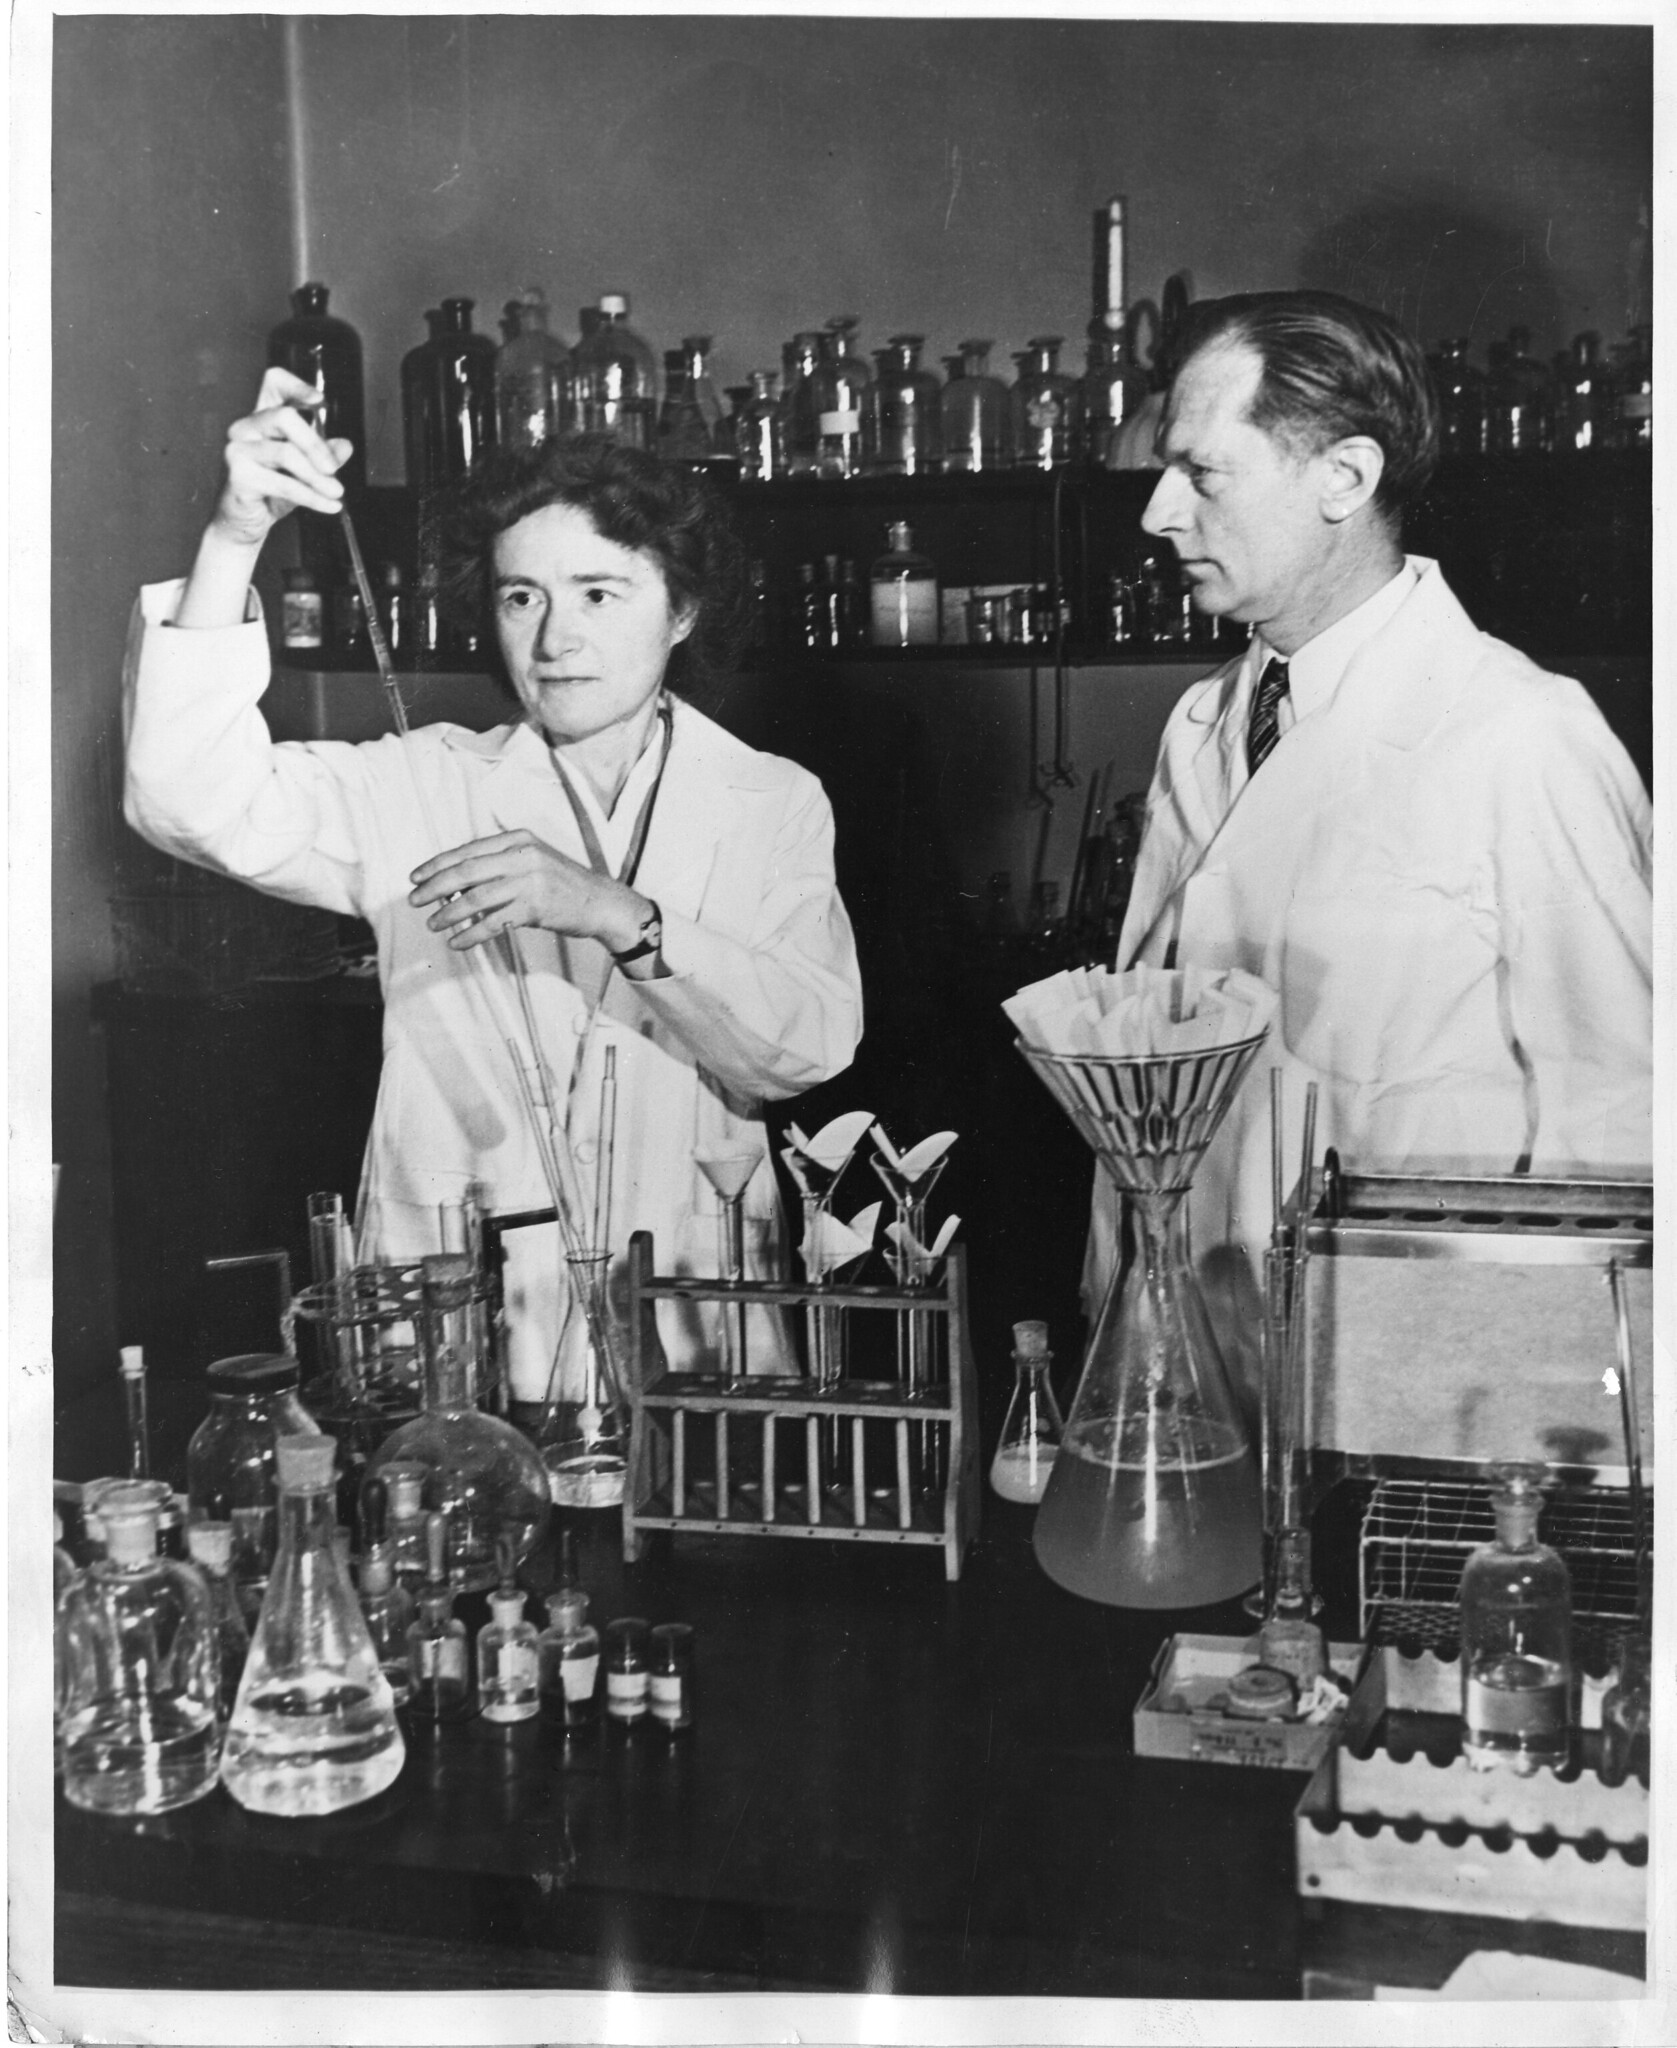 La biochimica Gerty Theresa Cori con il marito Carl Ferdinand Cori.
Fotografo sconosciuto, Smithsonian Institution, immagine di pubblico dominio, fonte: Flickr.